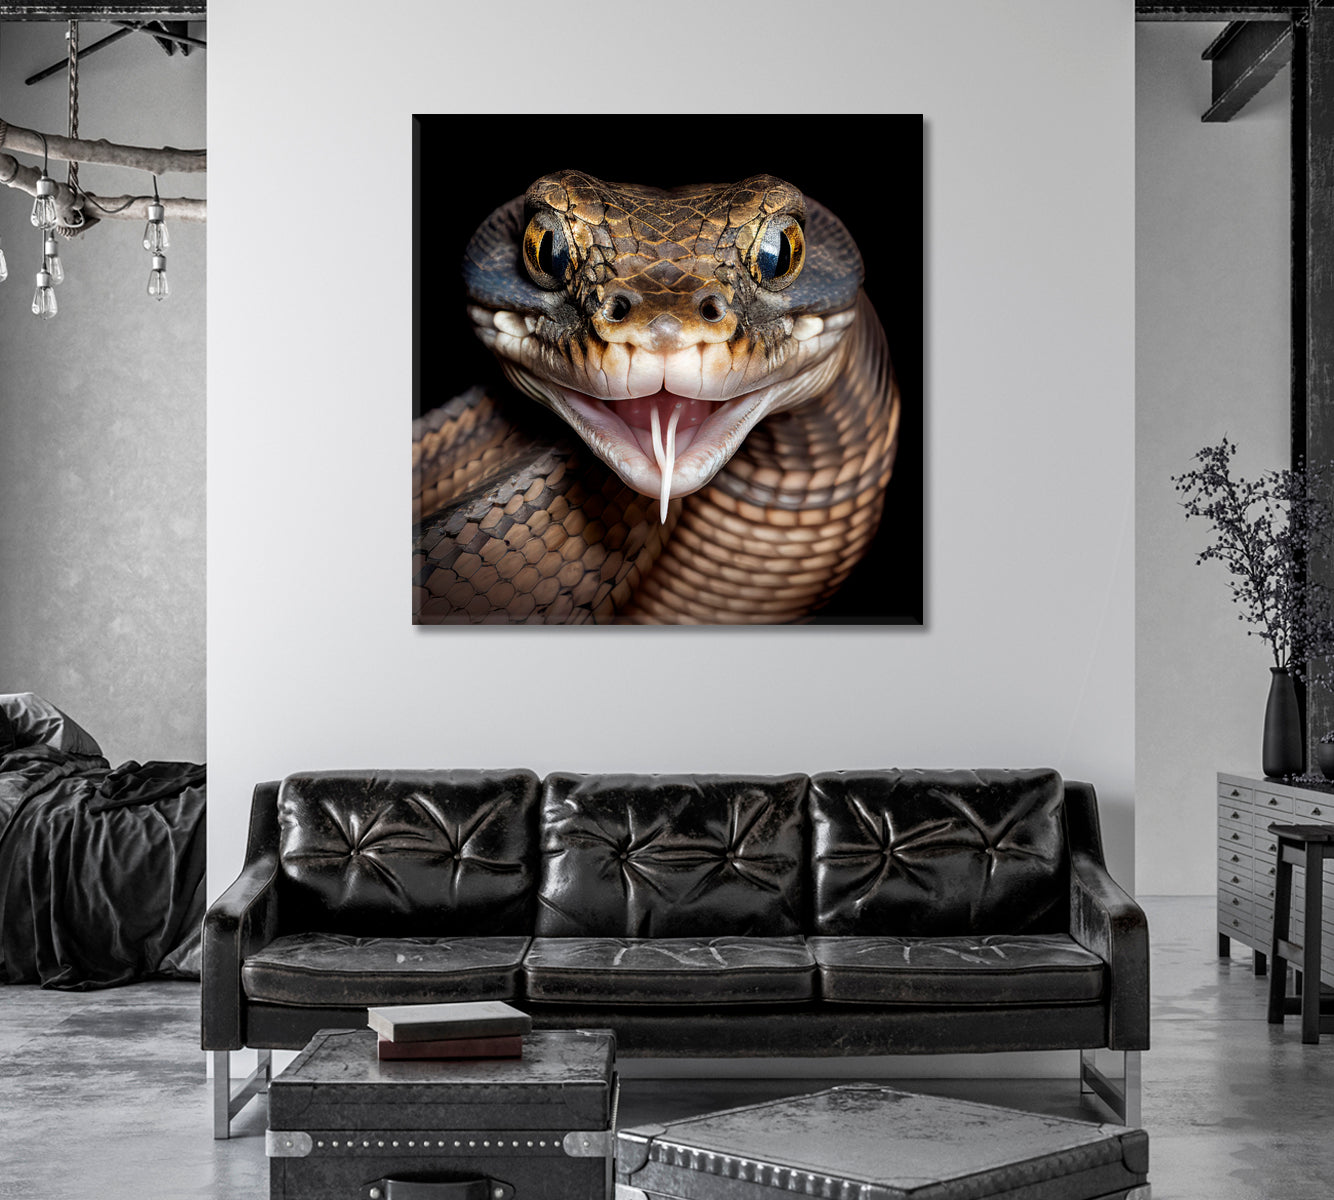 Poisonous Snake Canvas Art Home Decor-Canvas Print-CetArt-1 panel-12x12 inches-CetArt